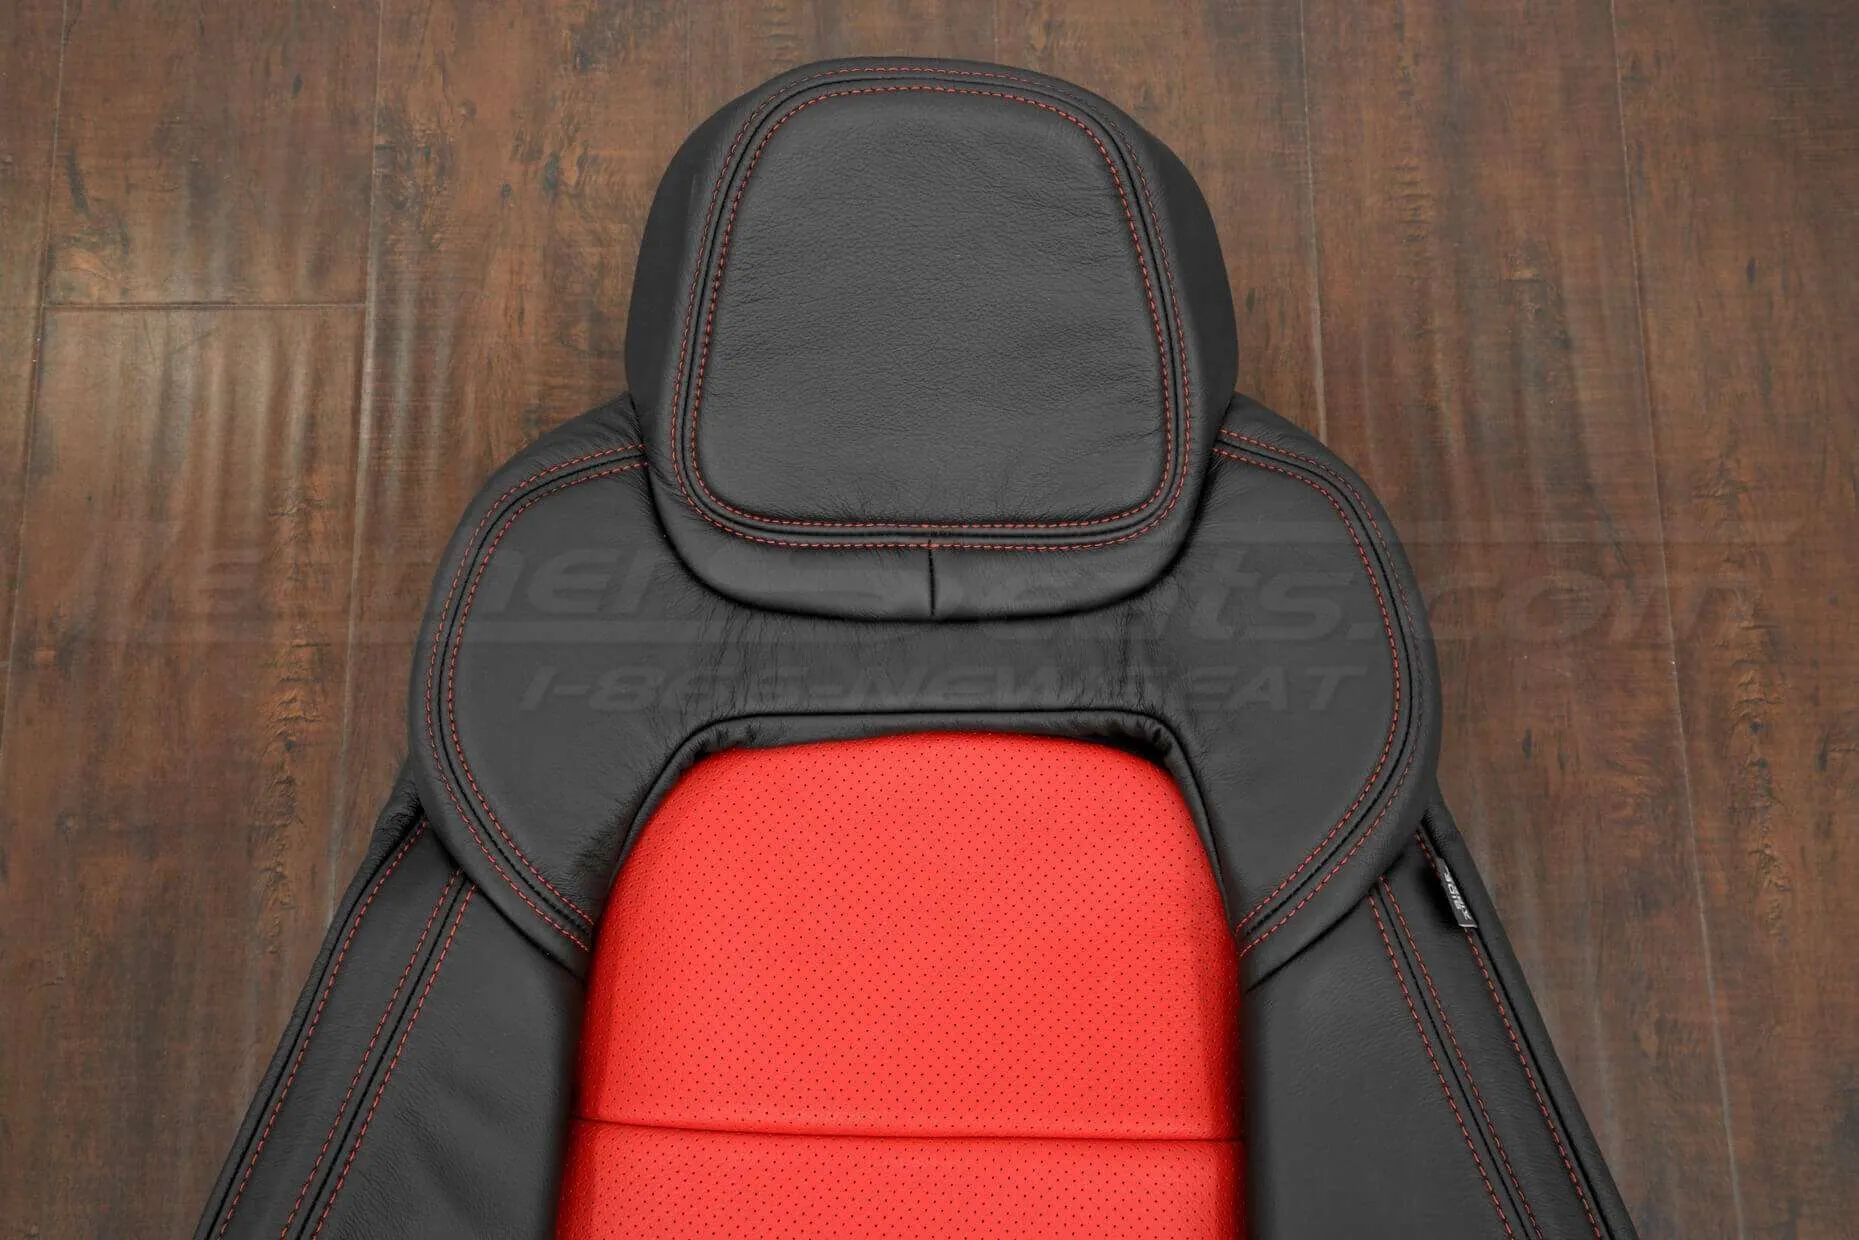 05-13 Chevrolet Corvette Upholstery Kit - Black & Bright Red - Headrest & upper insert